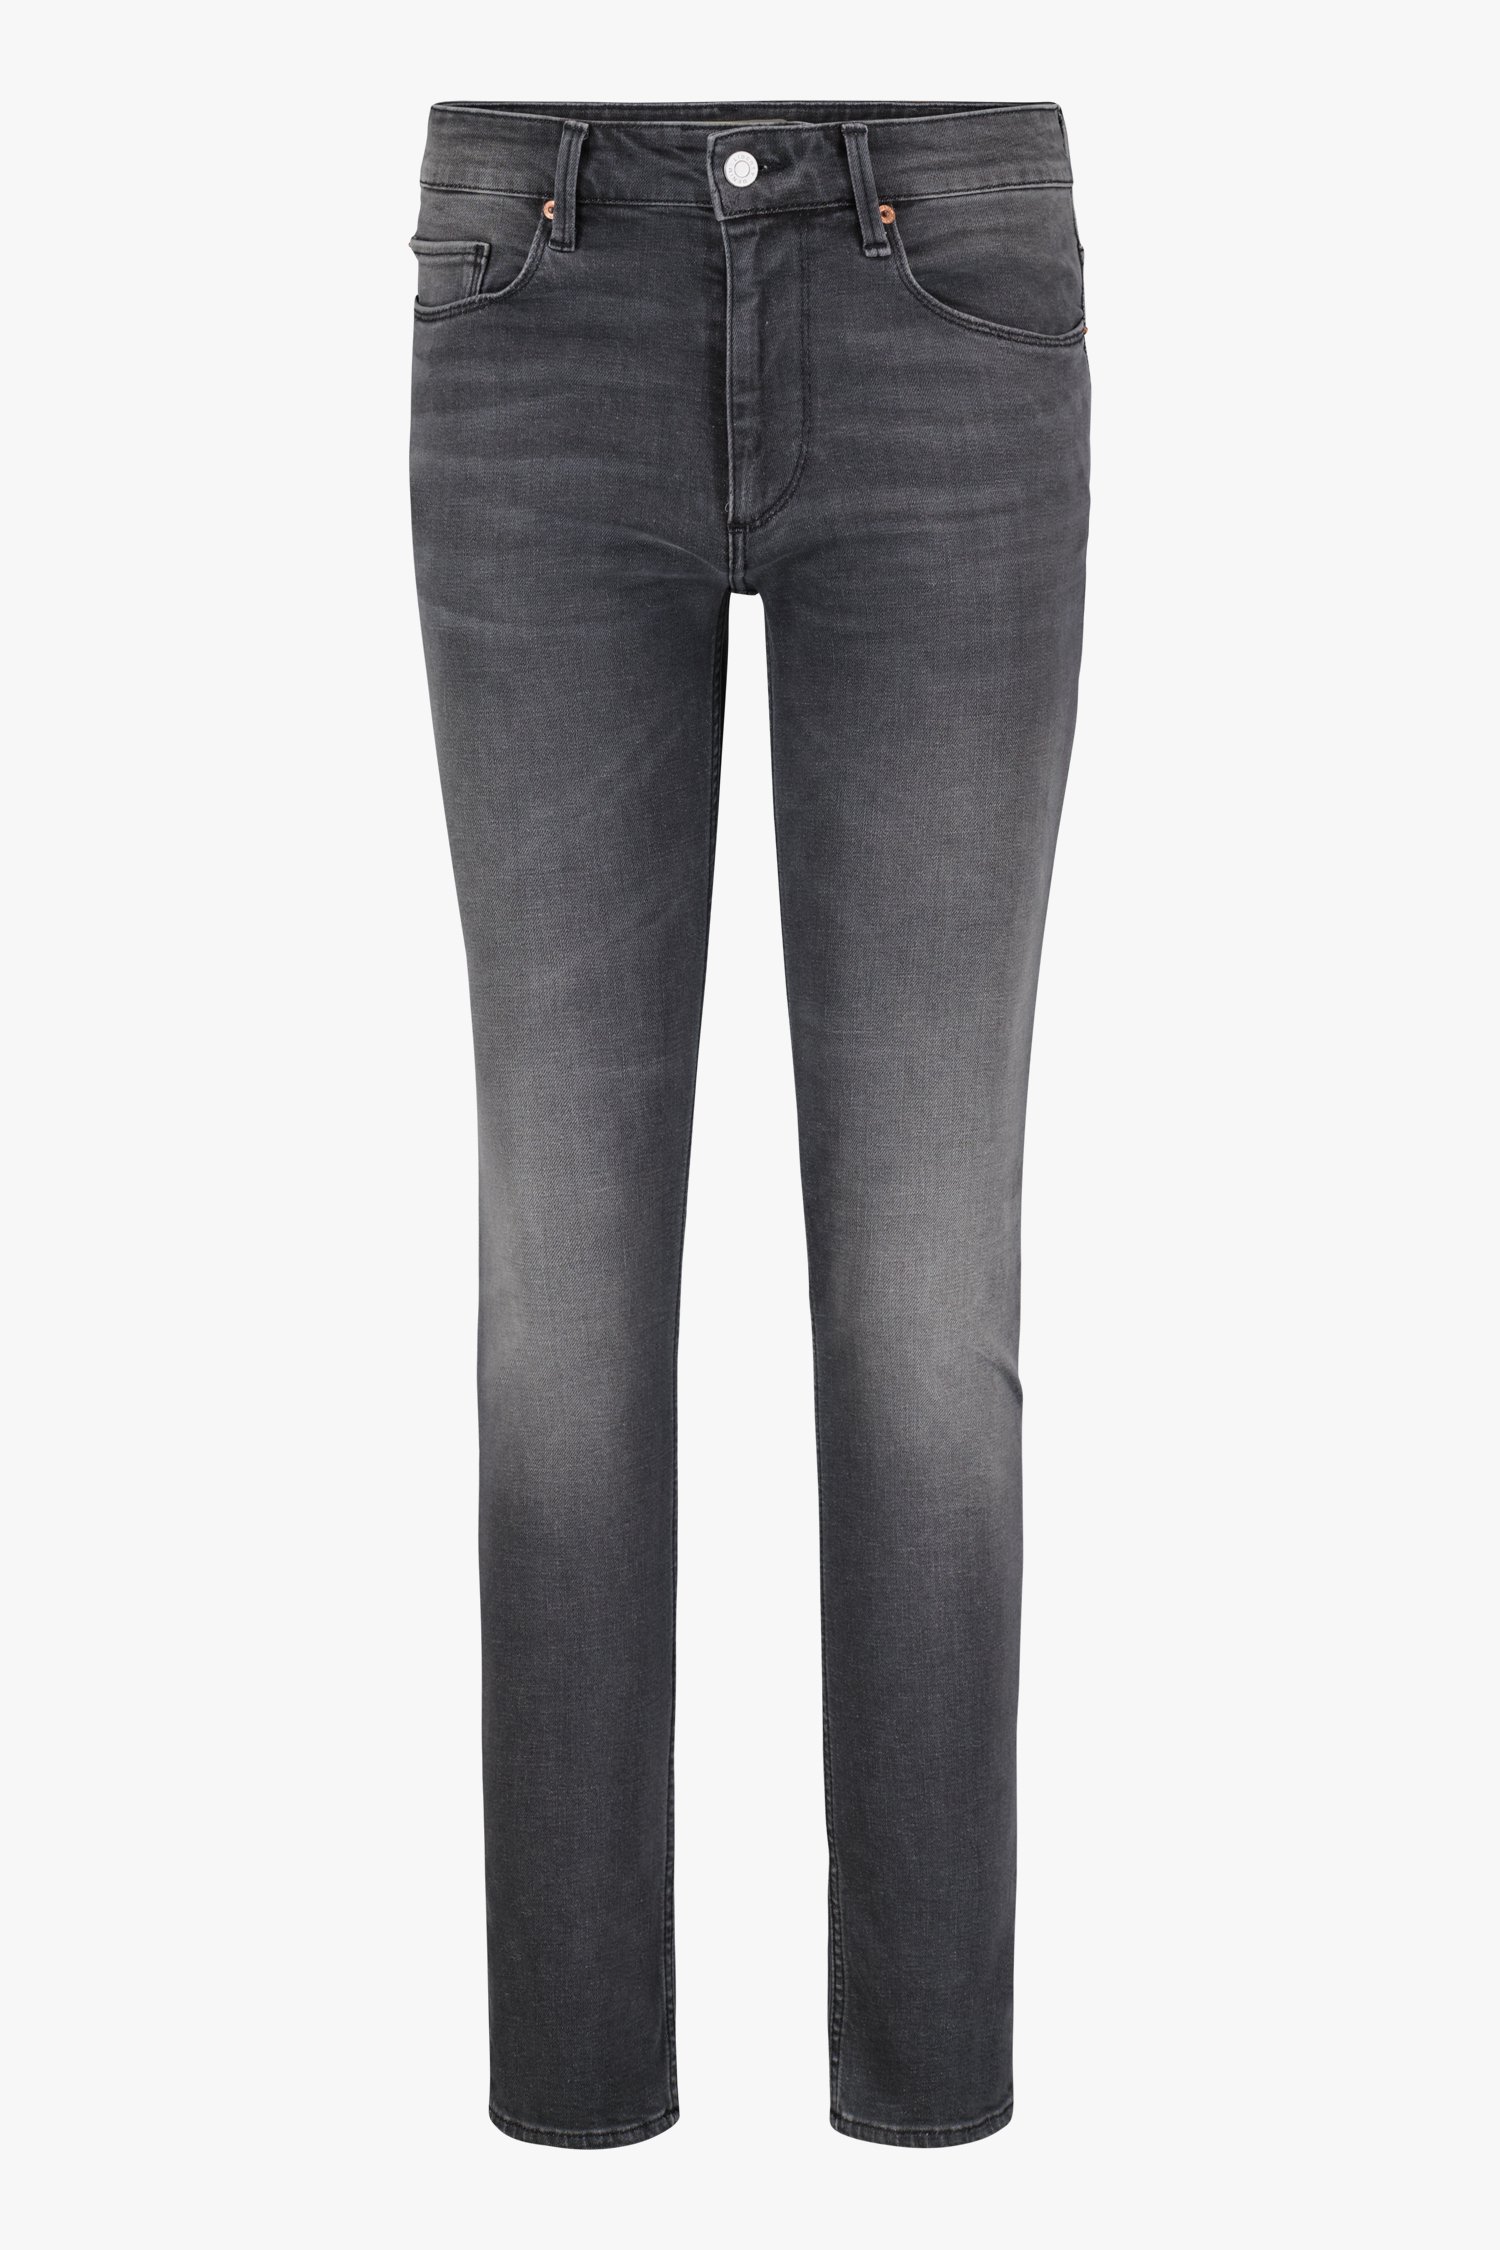 Grijze jeans - Tim - slim fit - L32 van Liberty Island Denim voor Heren